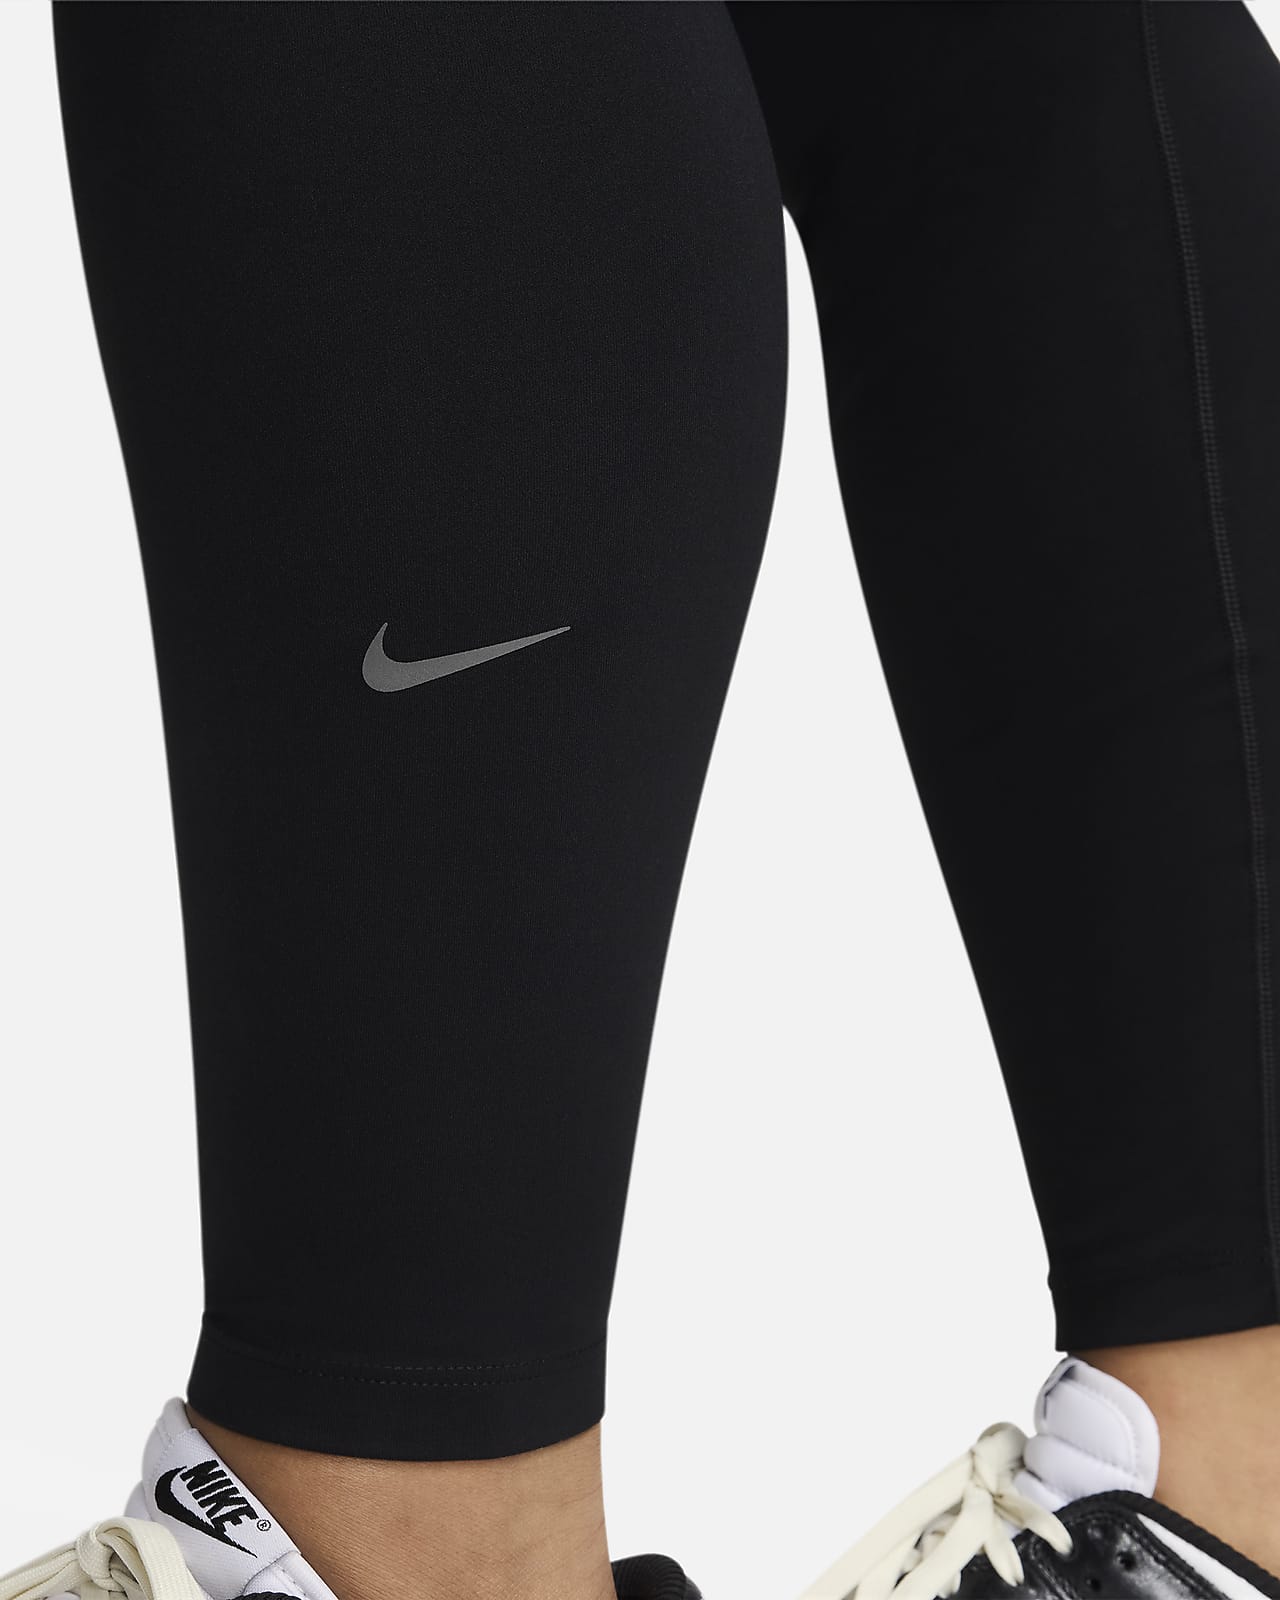 Nike Womens One High Rise Leggings - Black